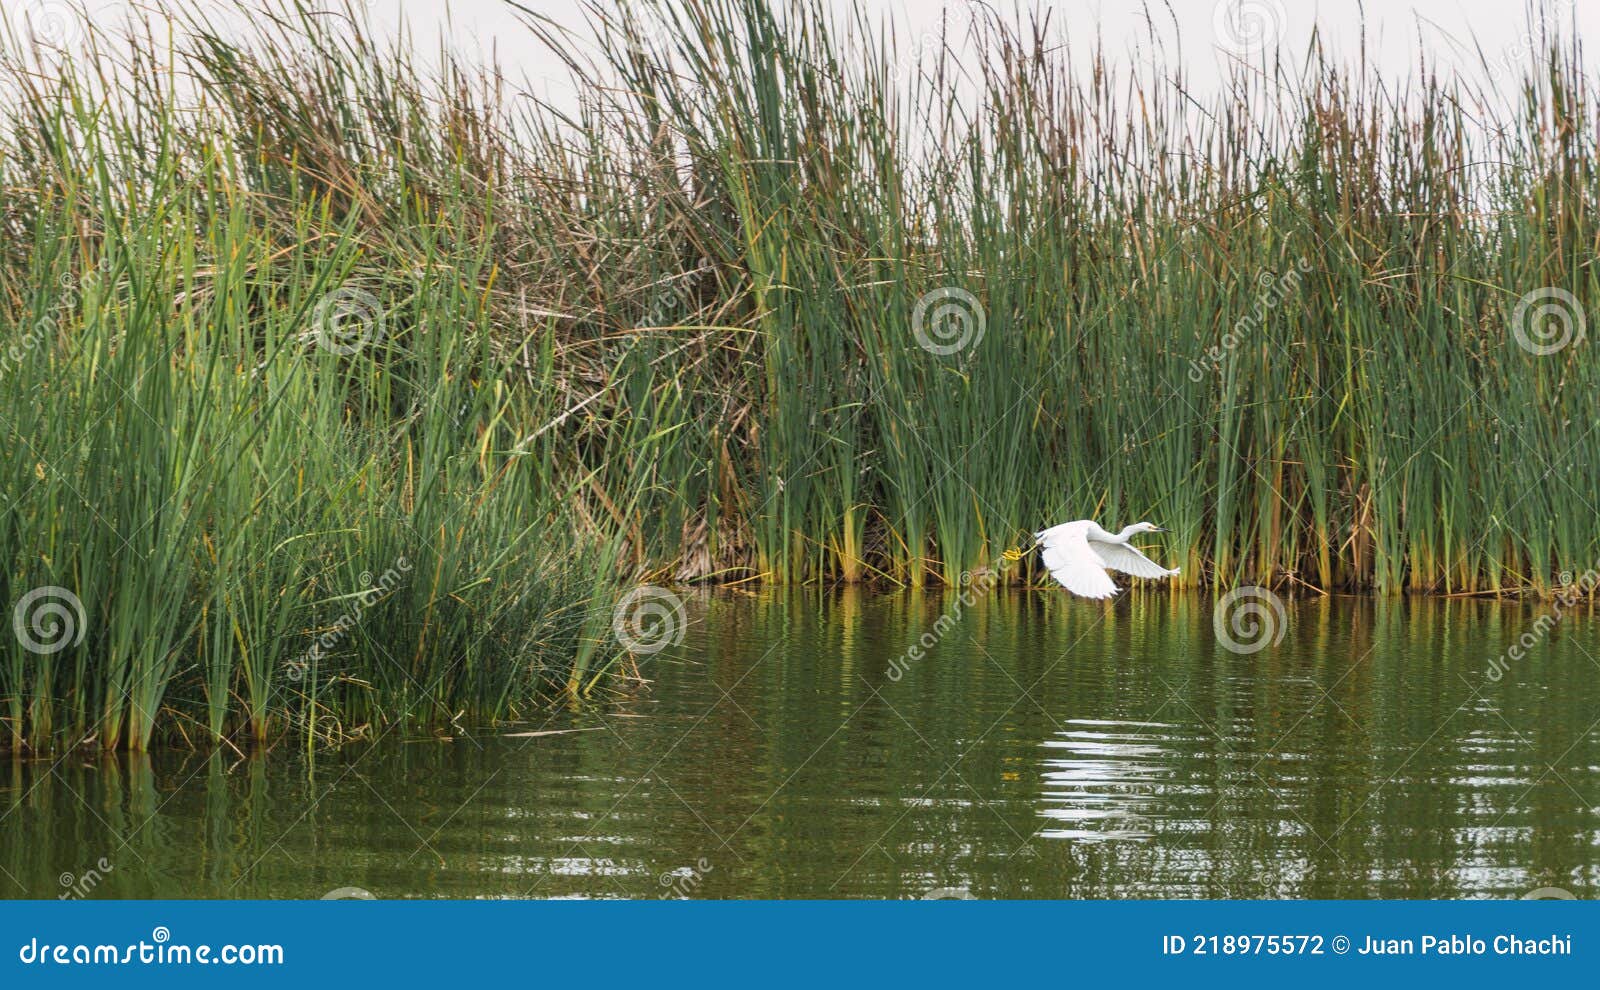 garza blanca flying over a lagoon